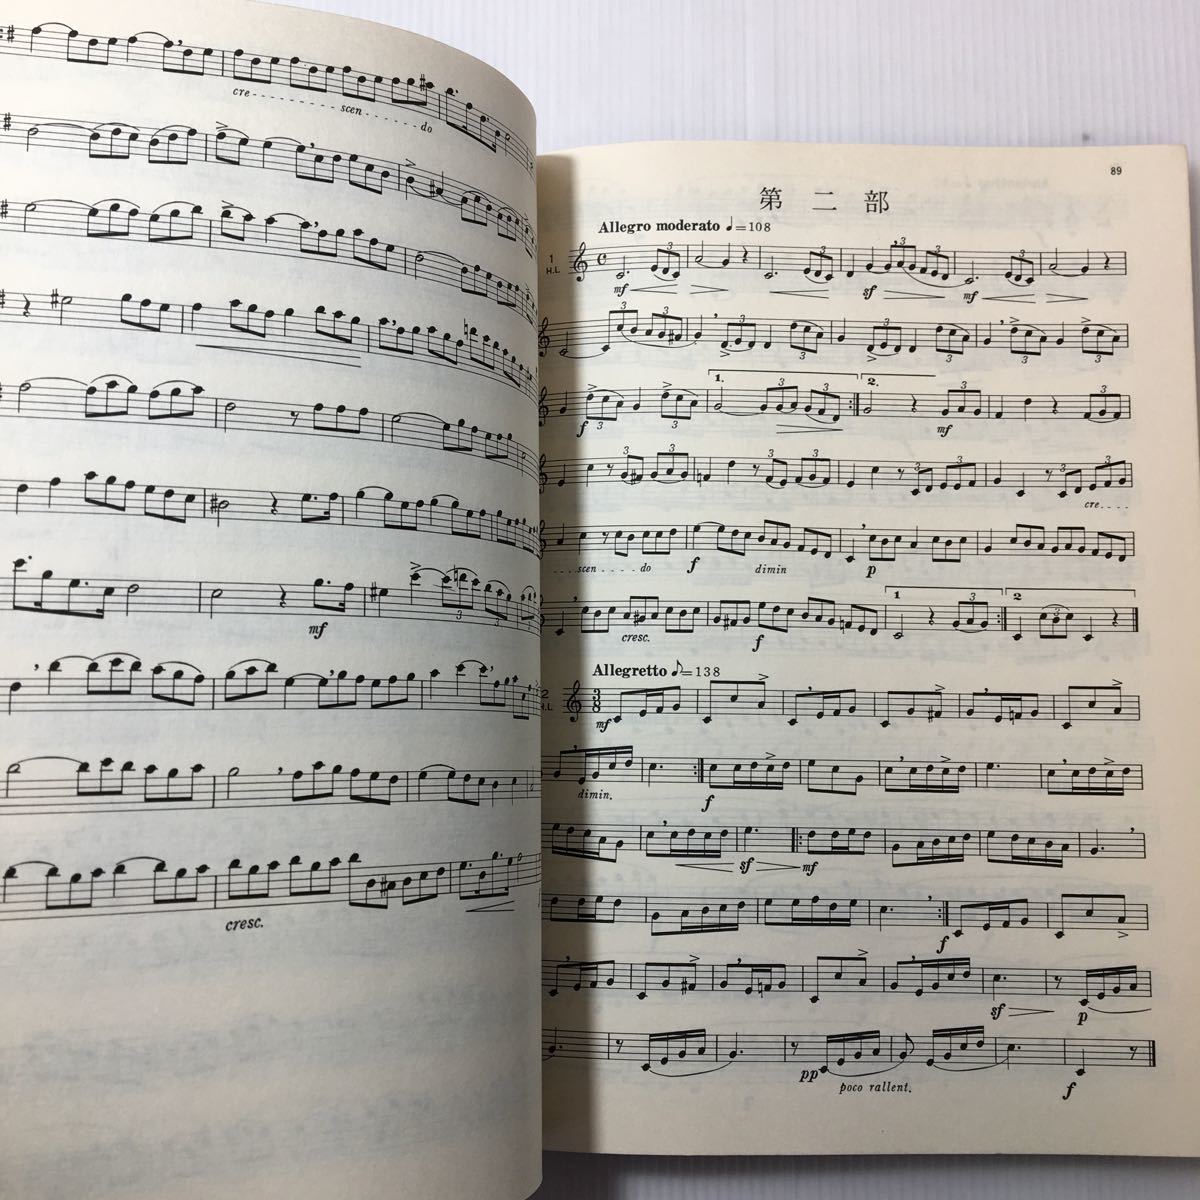 ソルフェージュ 楽譜 階名唱「メロディ練習曲集」300曲 ト音記号用 ヘ